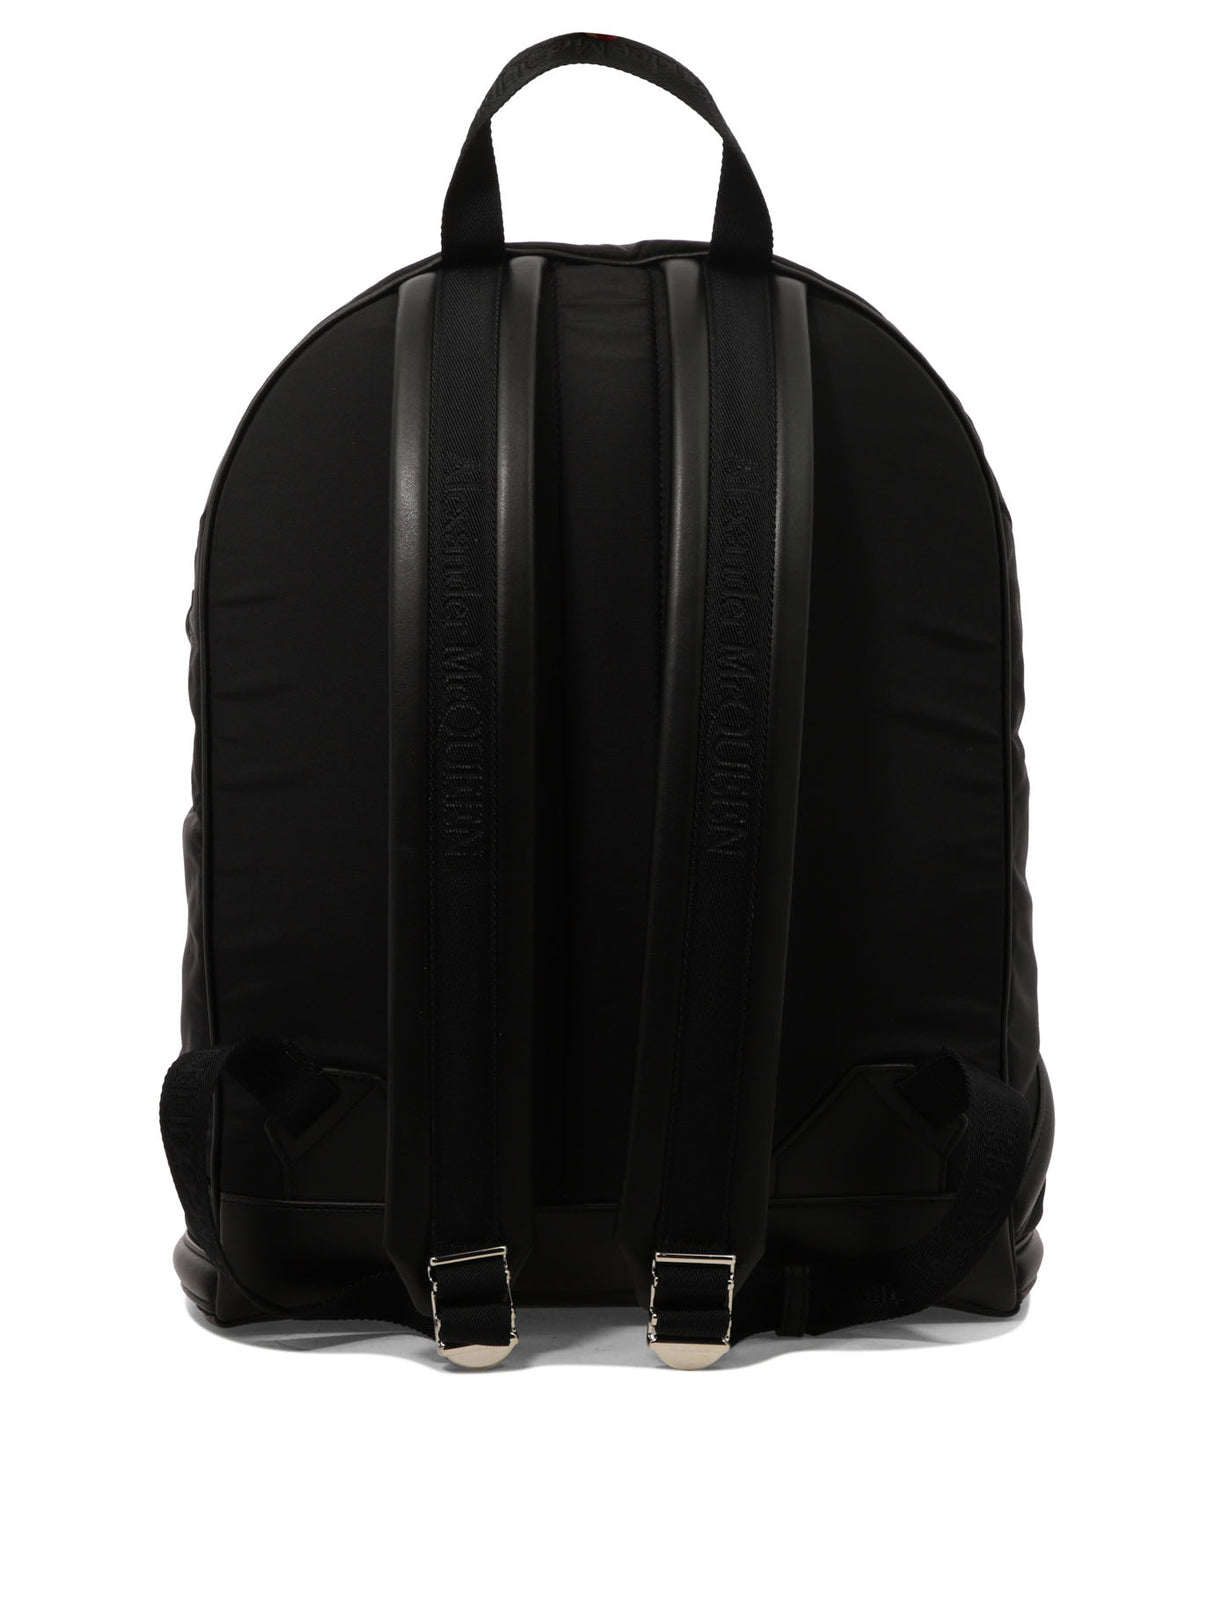 ALEXANDER MCQUEEN Black Nylon Harness Backpack for Men